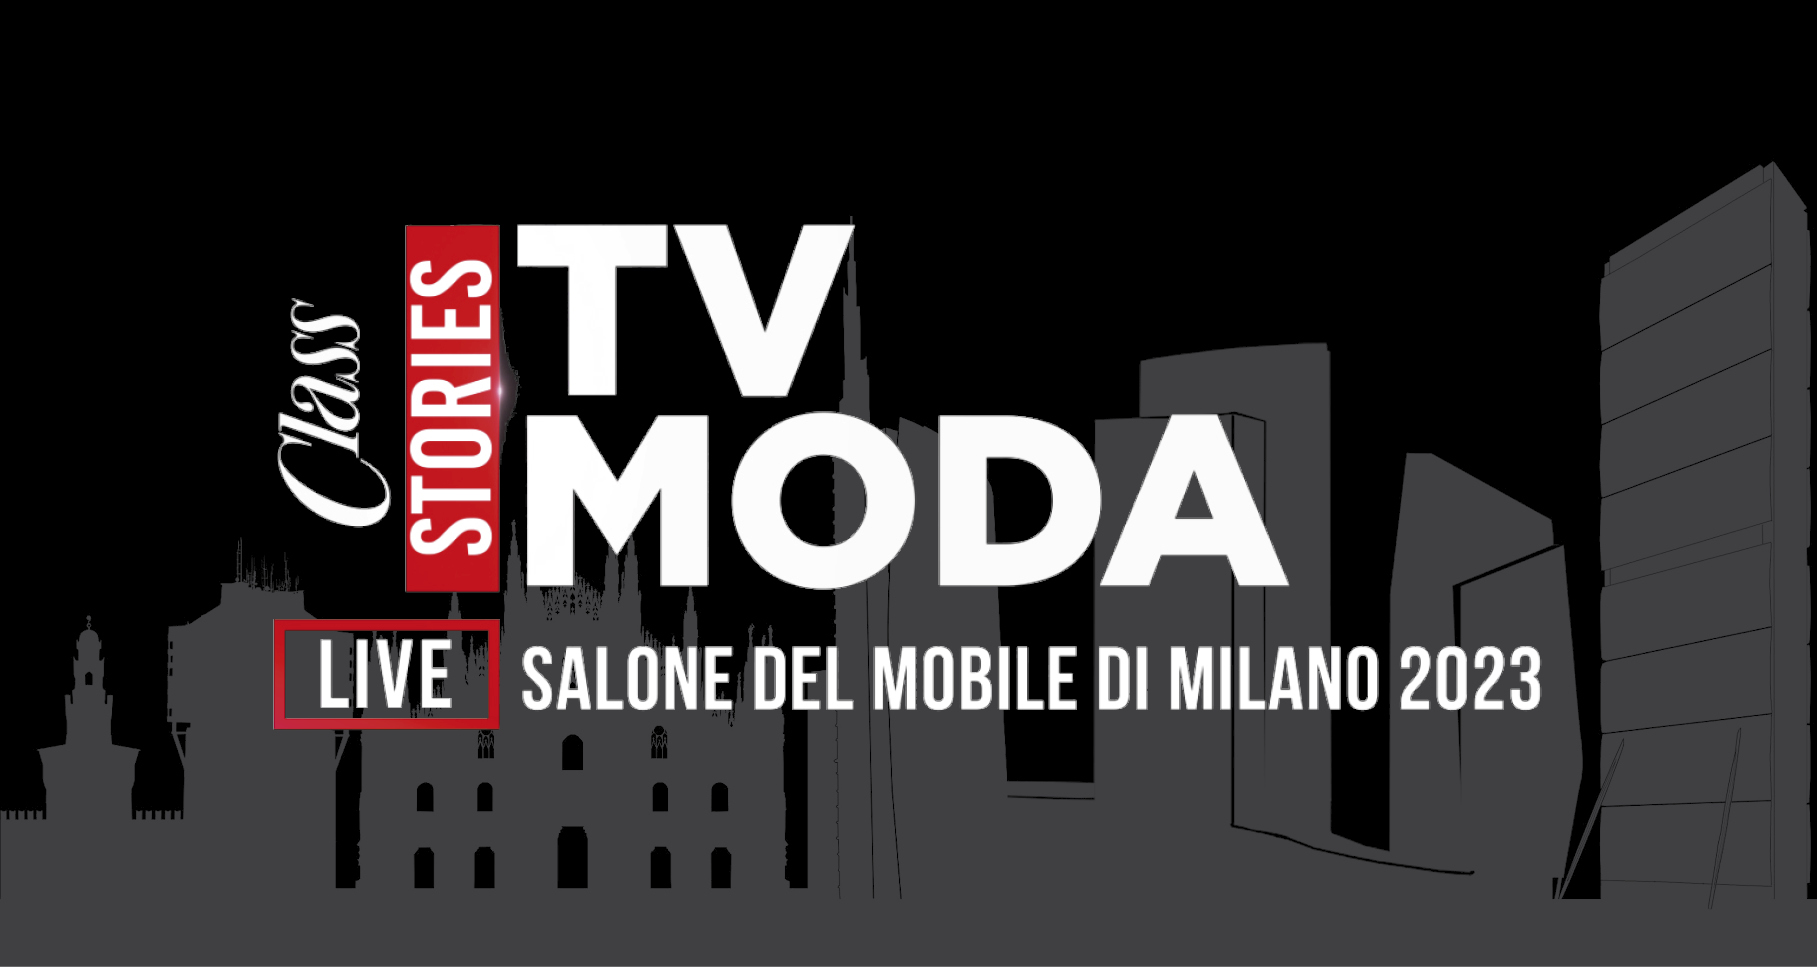 Class Tv Moda live from Salone del Mobile